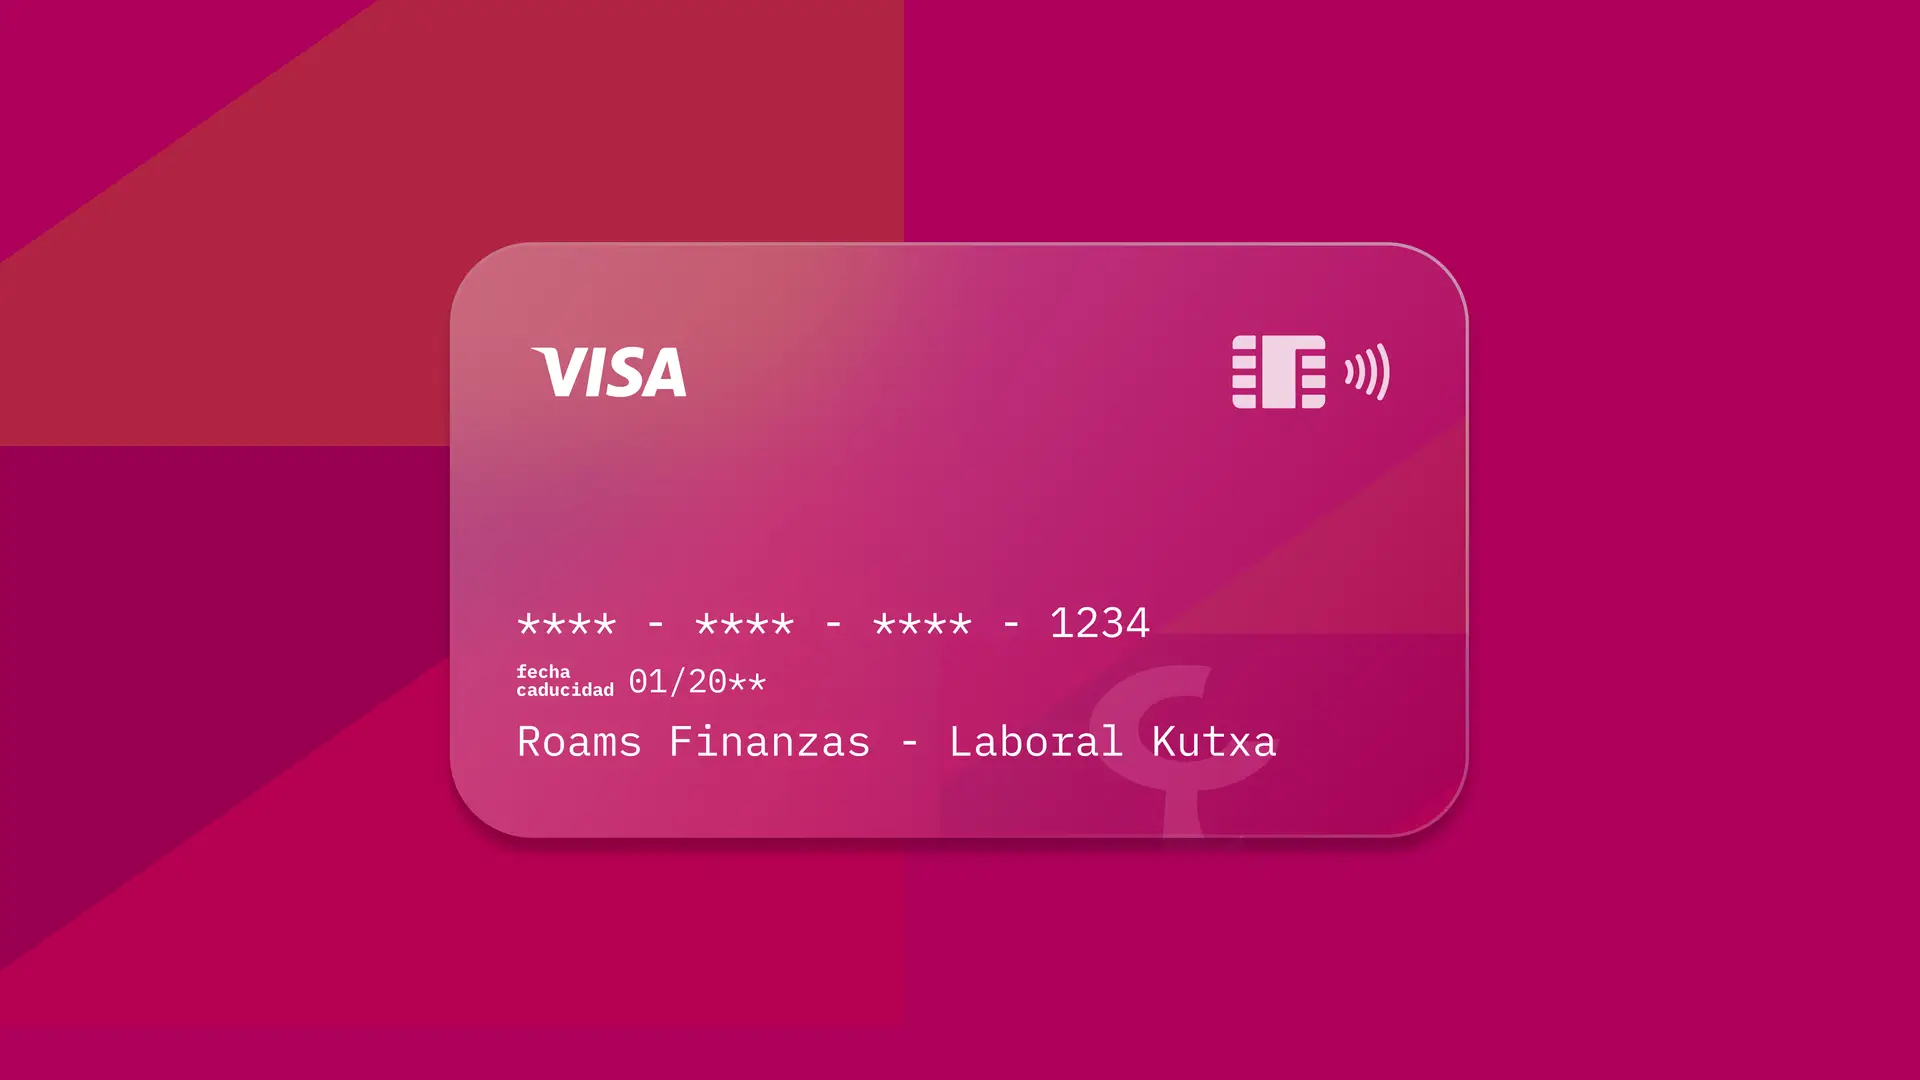 Simulación de una tarjeta de la entidad financiera Laboral Kutxa creada por Roams.